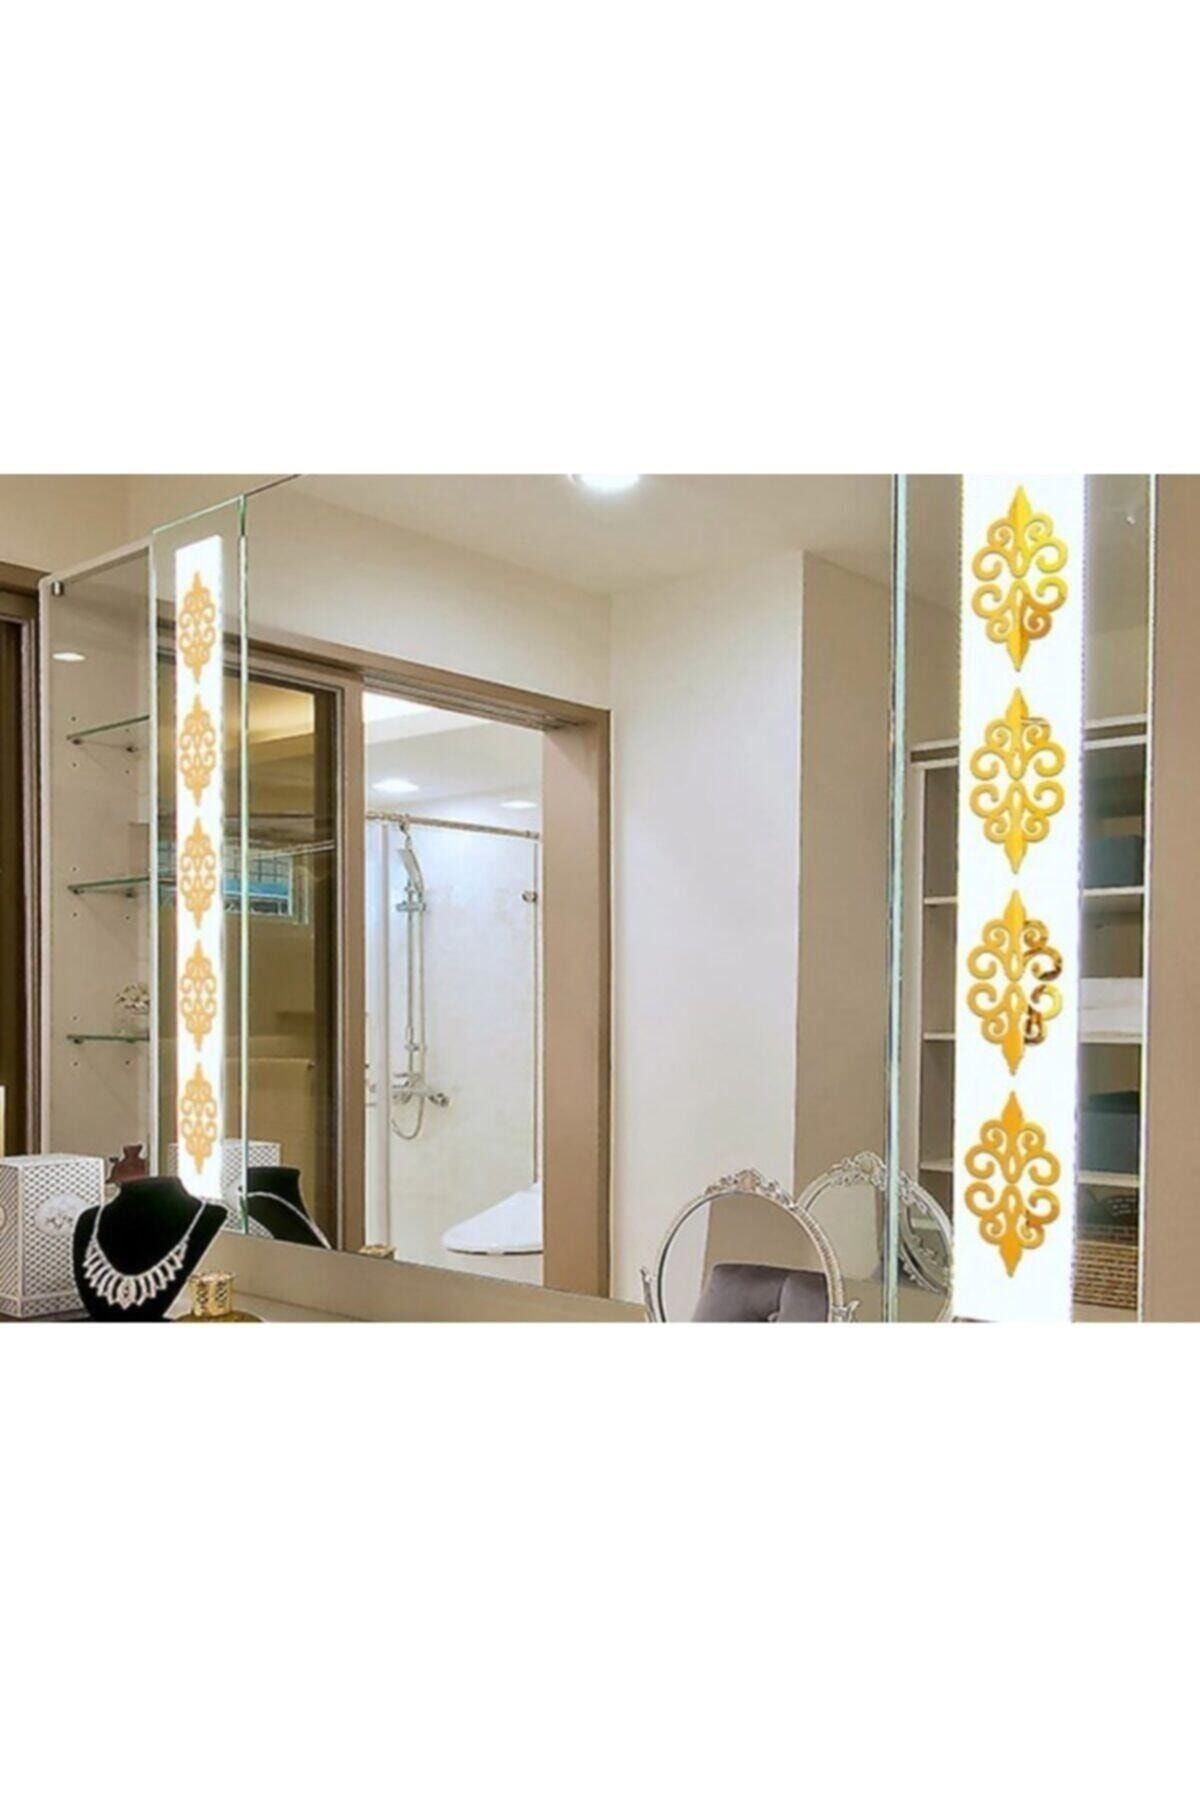 Abaküs Dekor Süs Bordür Ayna Gold Altın 10x Pleksi Dekoratif Bordür Ayna  Antre 7*7cm Fiyatı, Yorumları - Trendyol